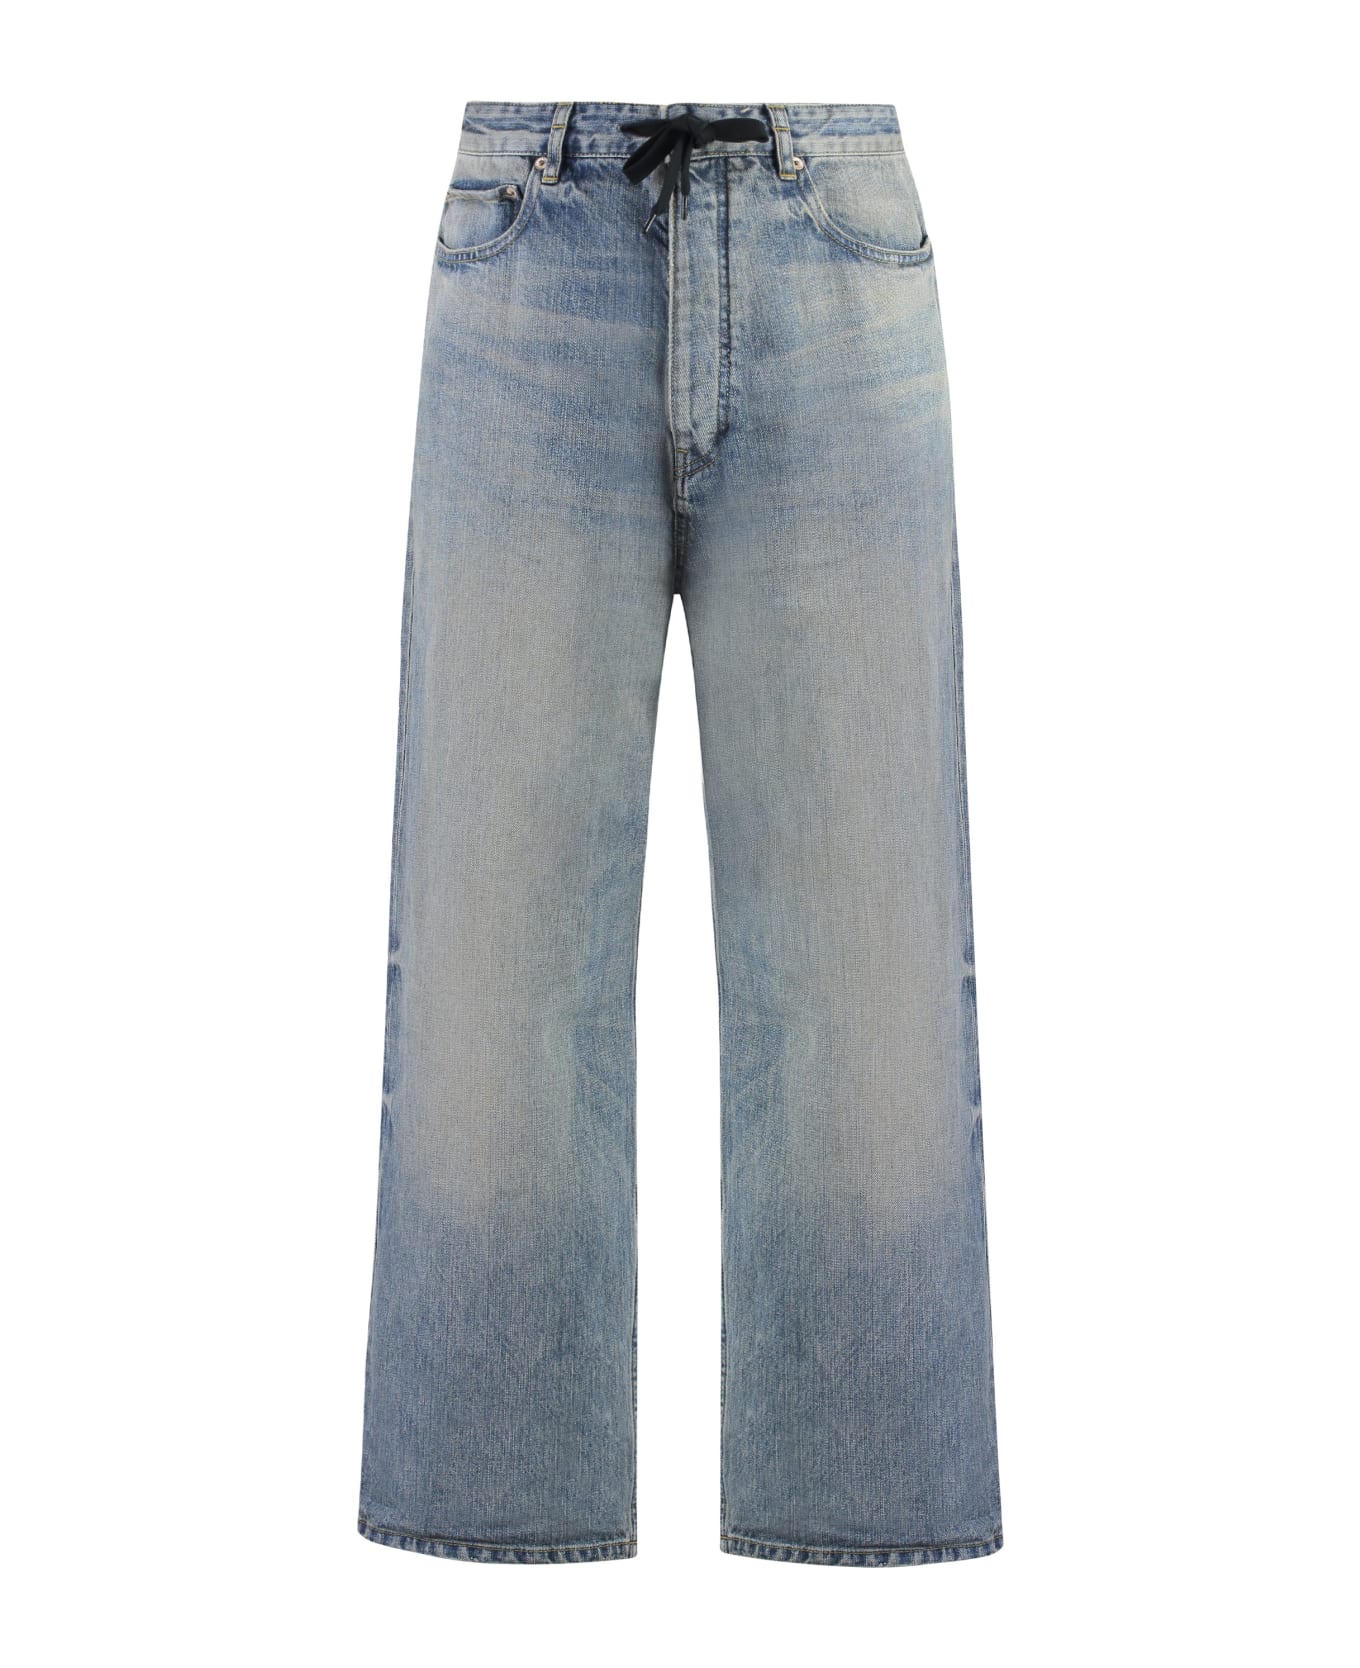 Balenciaga Baggy Jeans - Blue